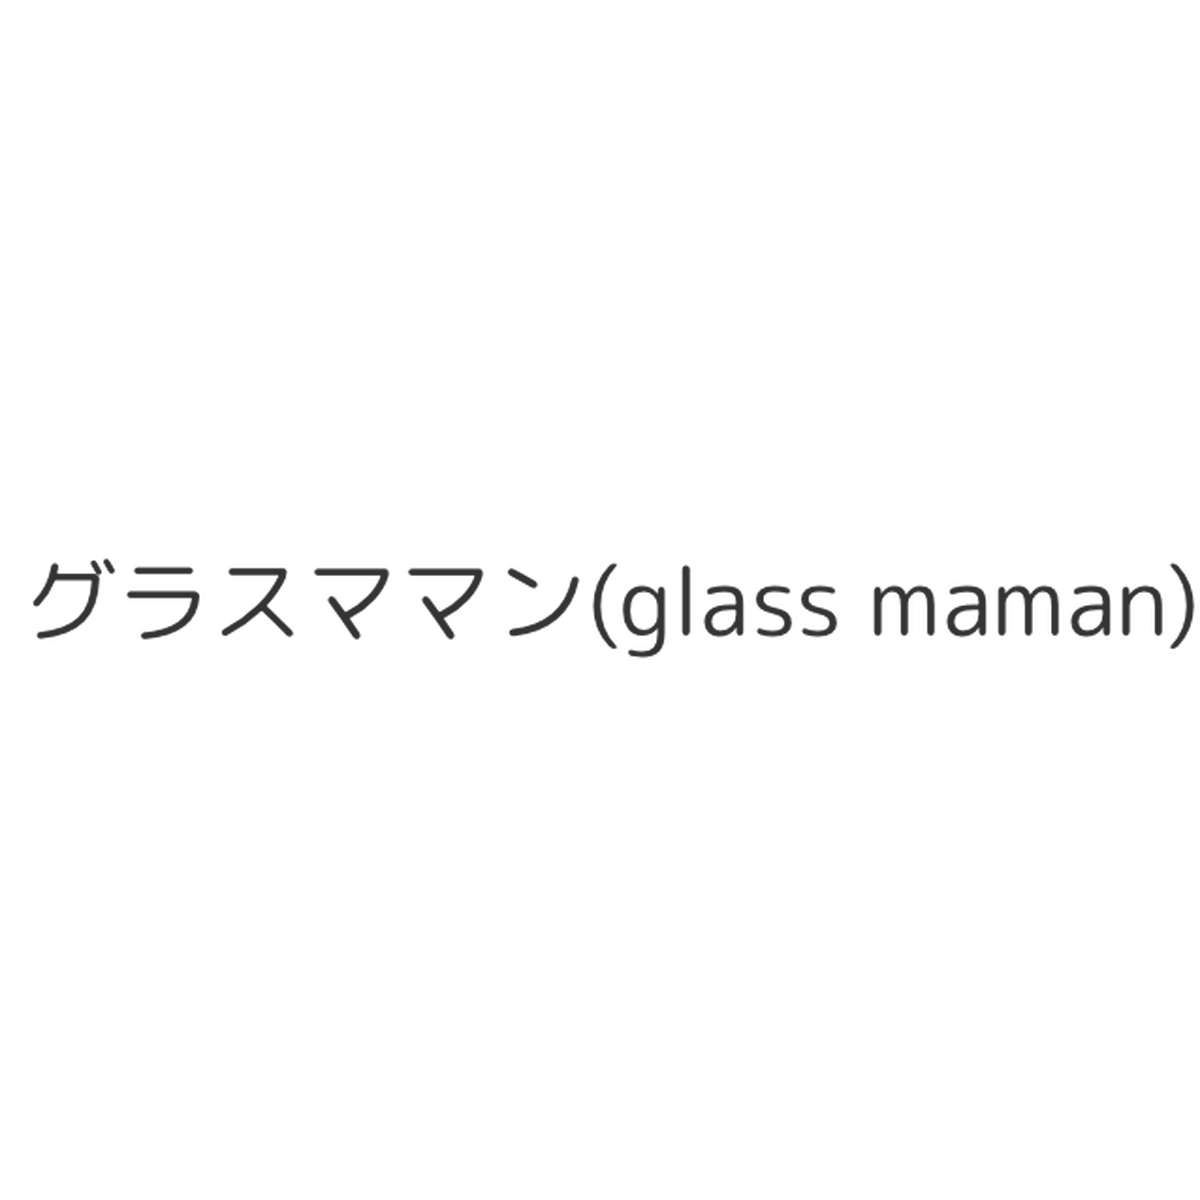 Blog グラスママン